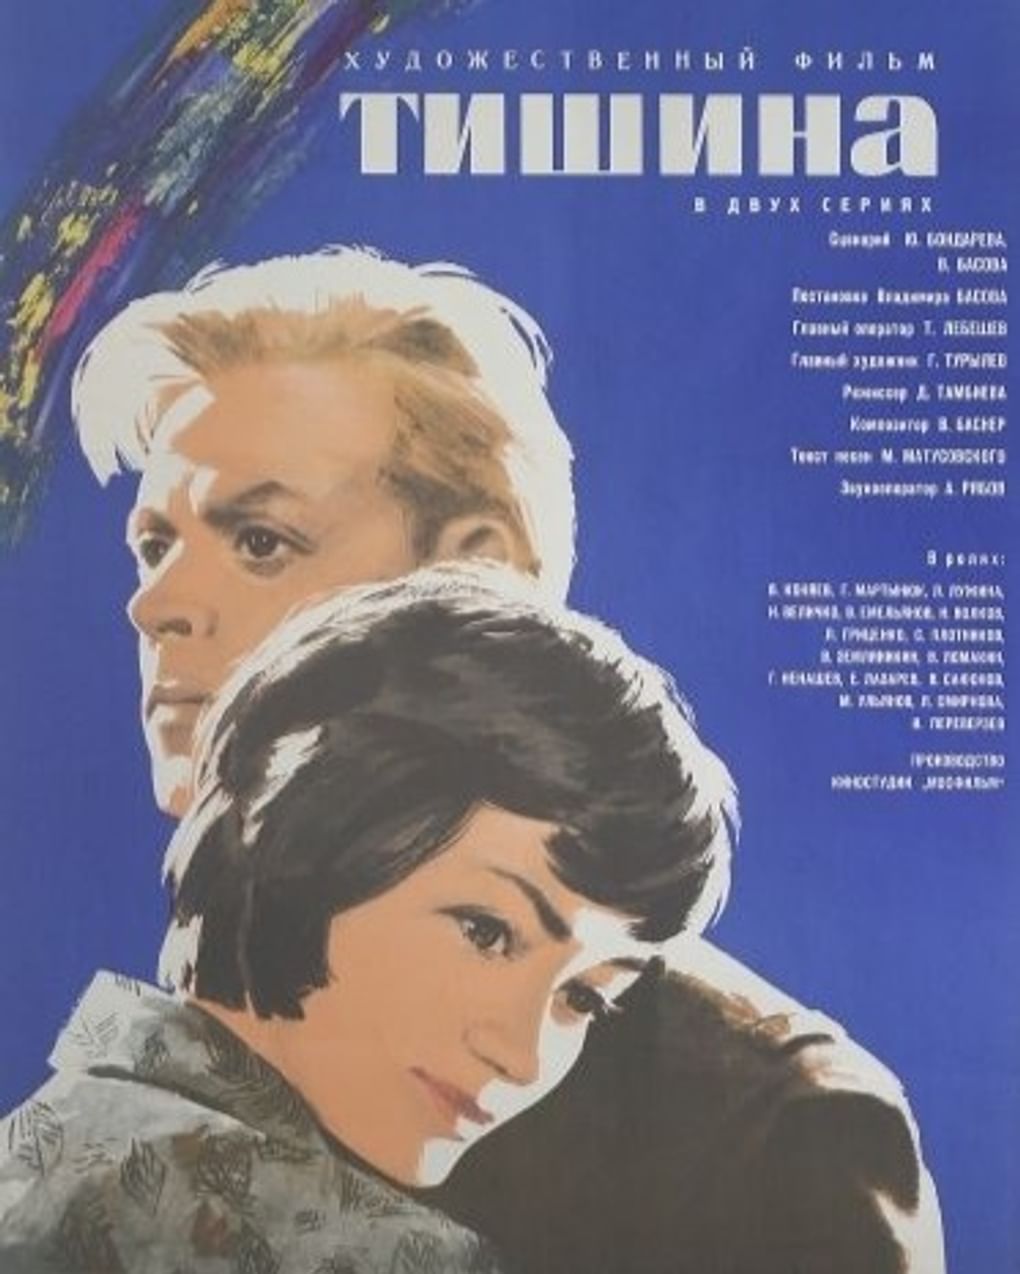 Постер художественного фильма Владимира Басова «Тишина» (1964)